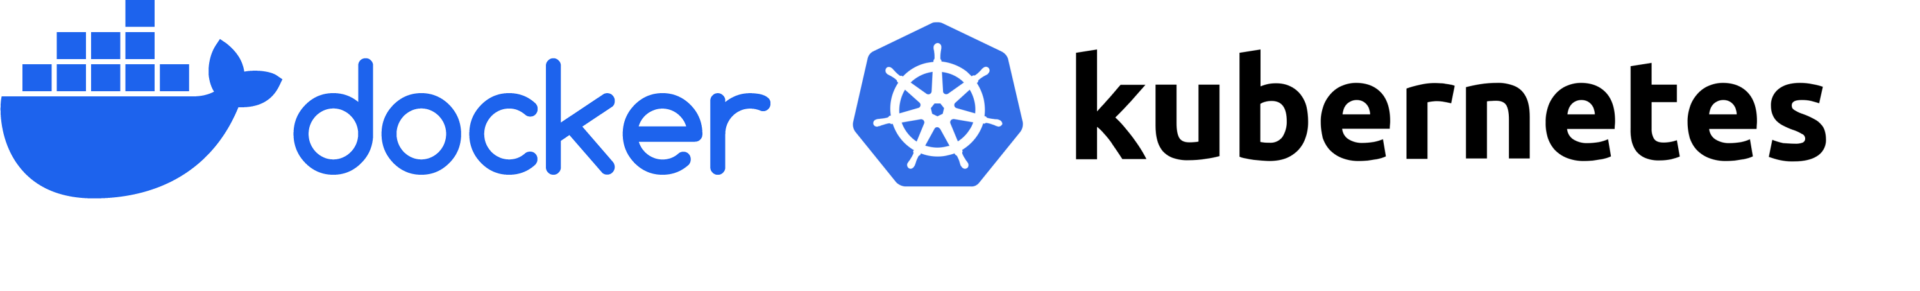 Docker + Kubernetes-Logos